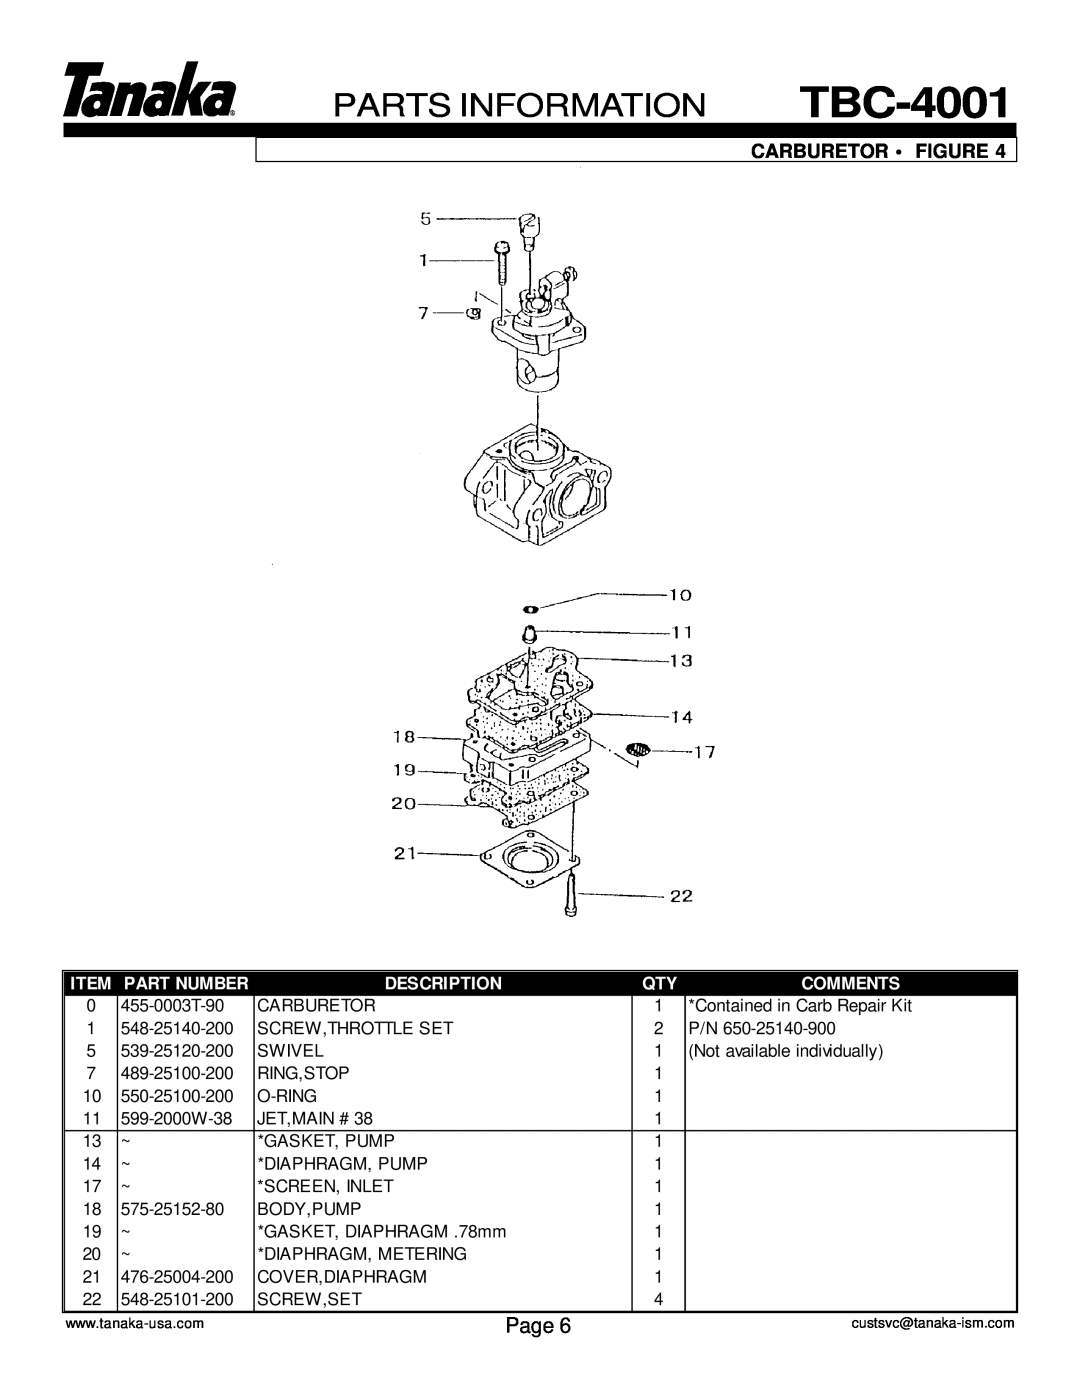 Tanaka TBC-4001 manual Parts Information, Page, Carburetor Figure, Part Number, Description, Comments 